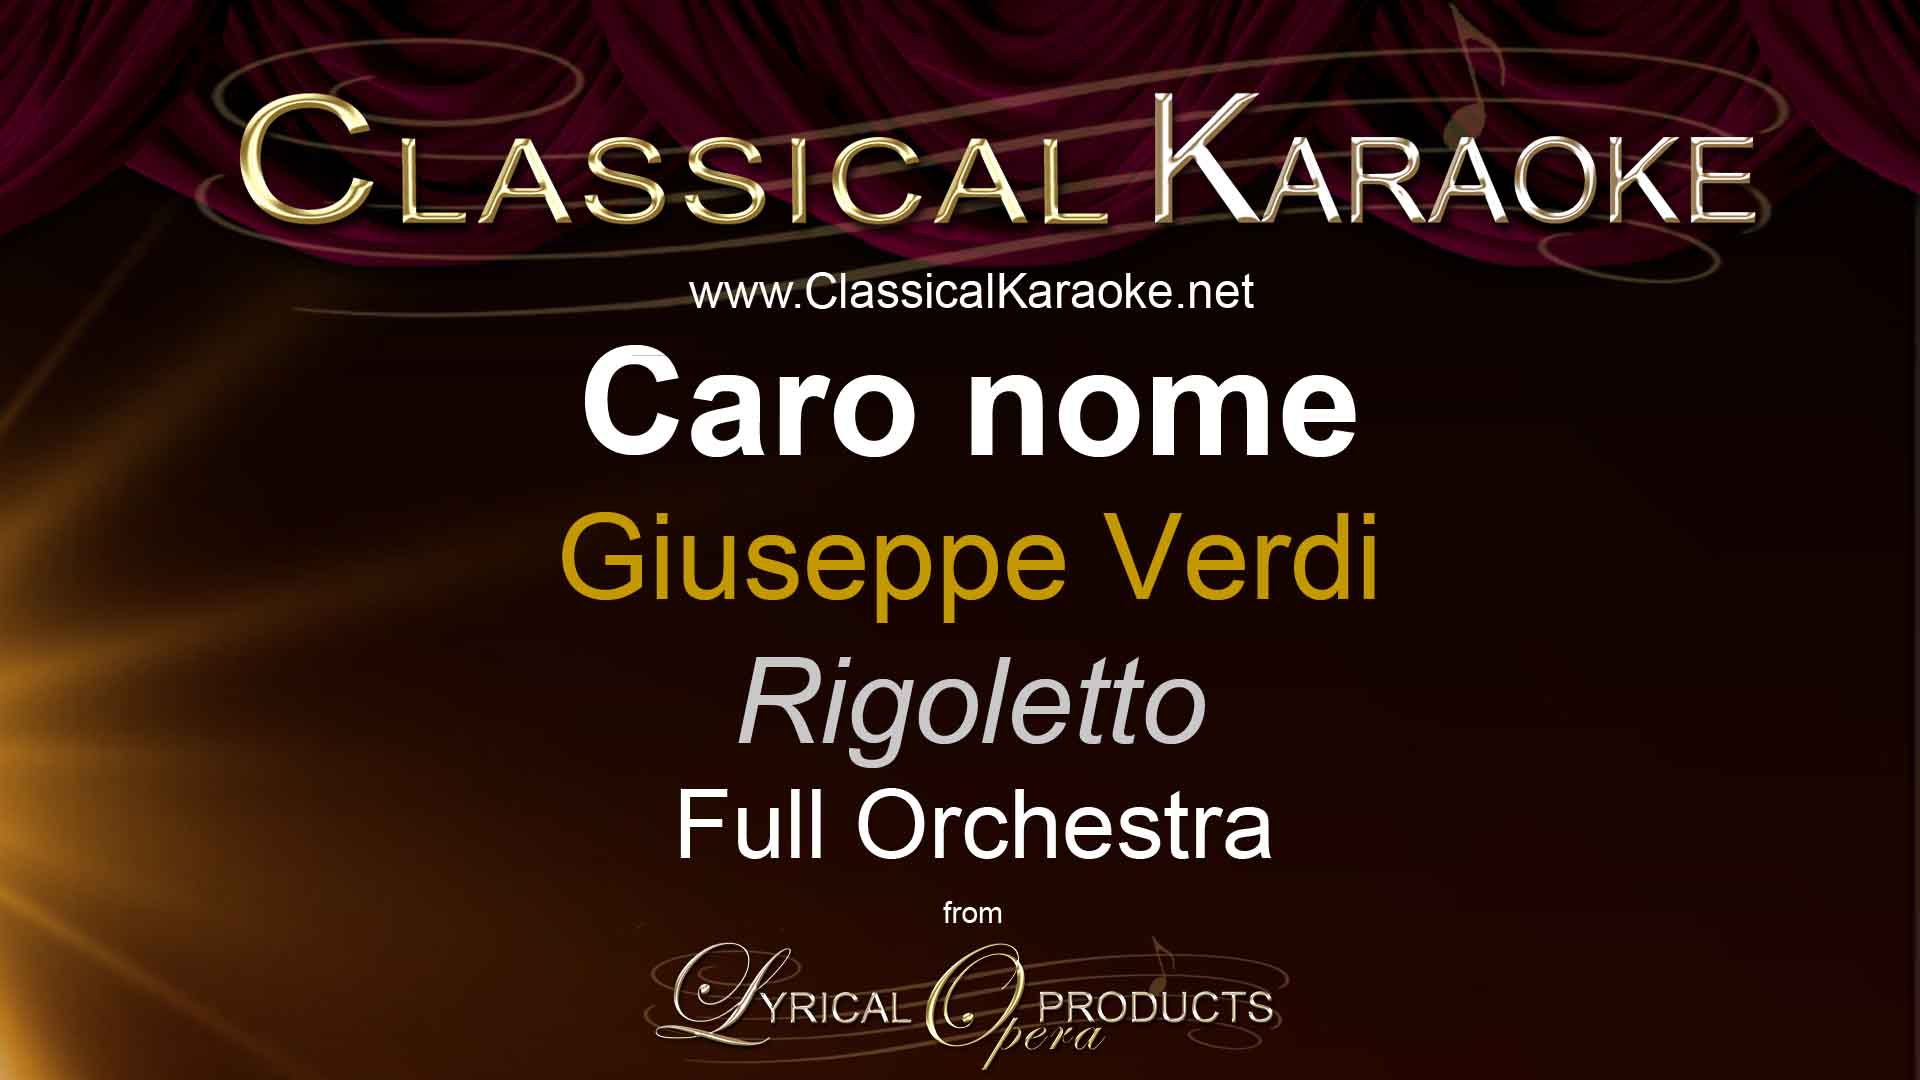 Caro nome, Rigoletto, Verdi, Full Orchestral Accompaniment (karaoke) track